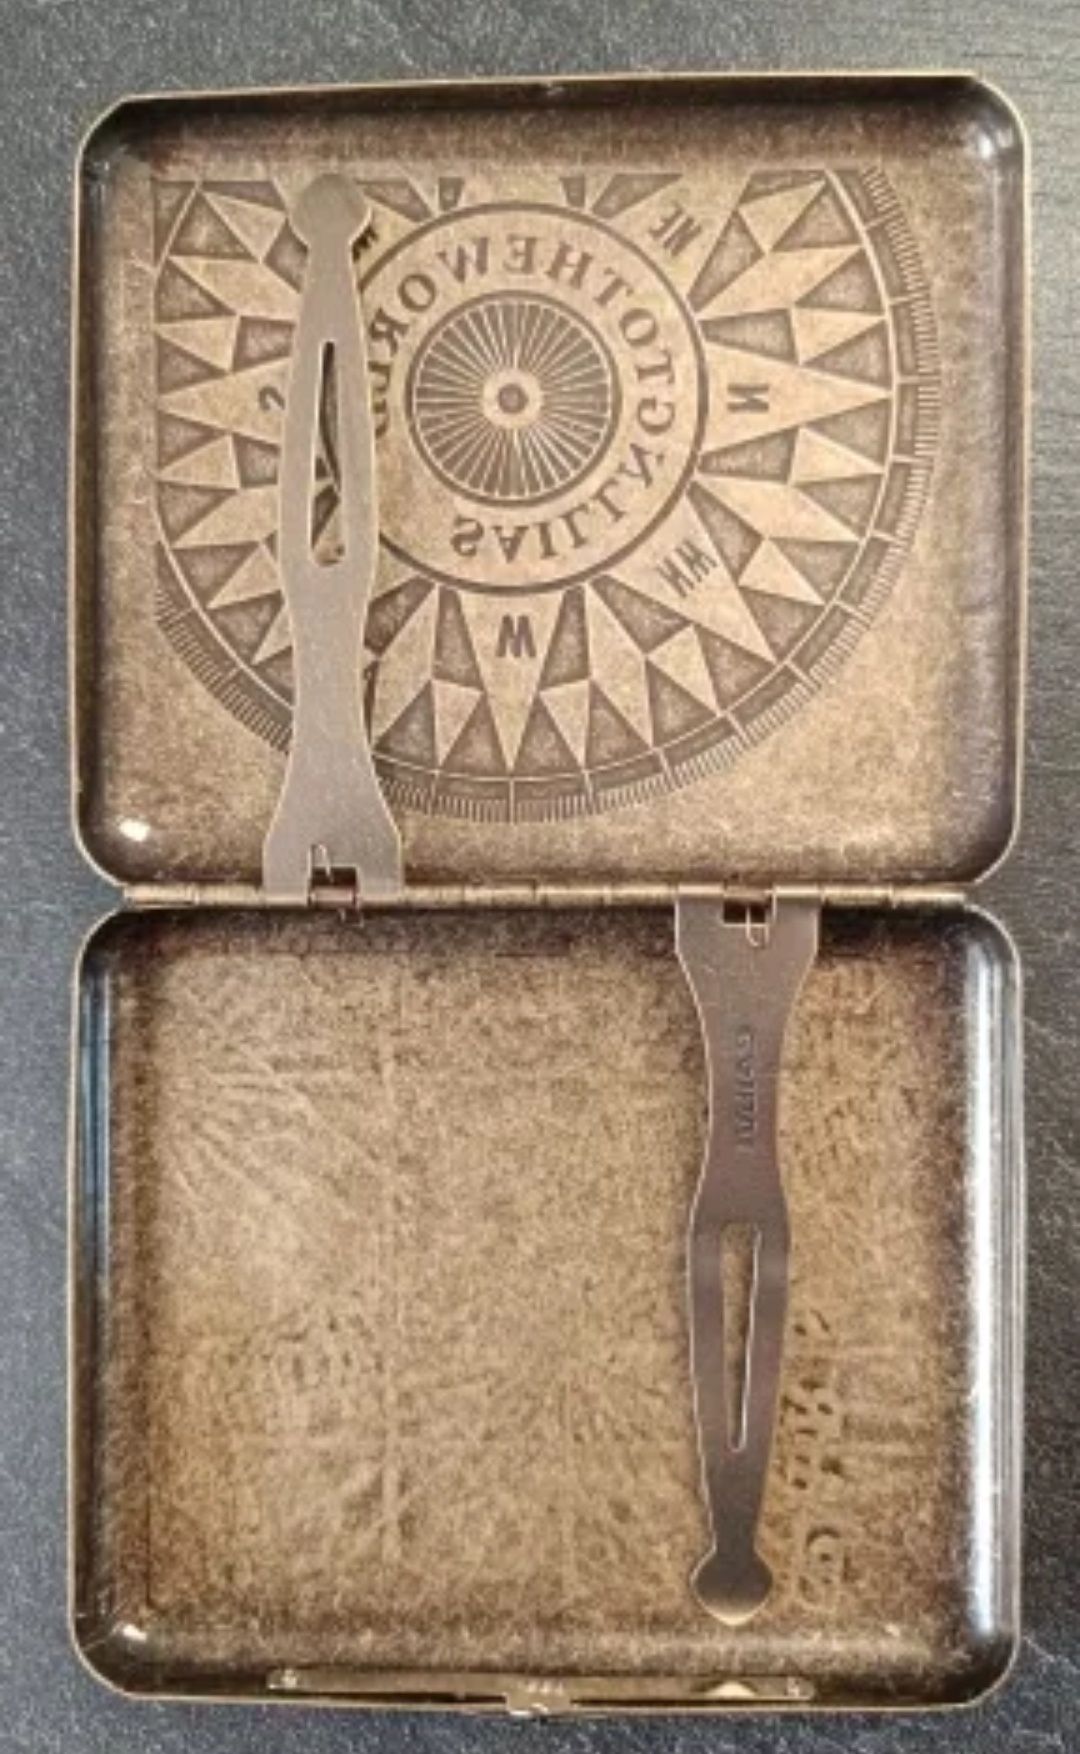 Картхолдер металлический Счастливый морской компас на подарок

Полност